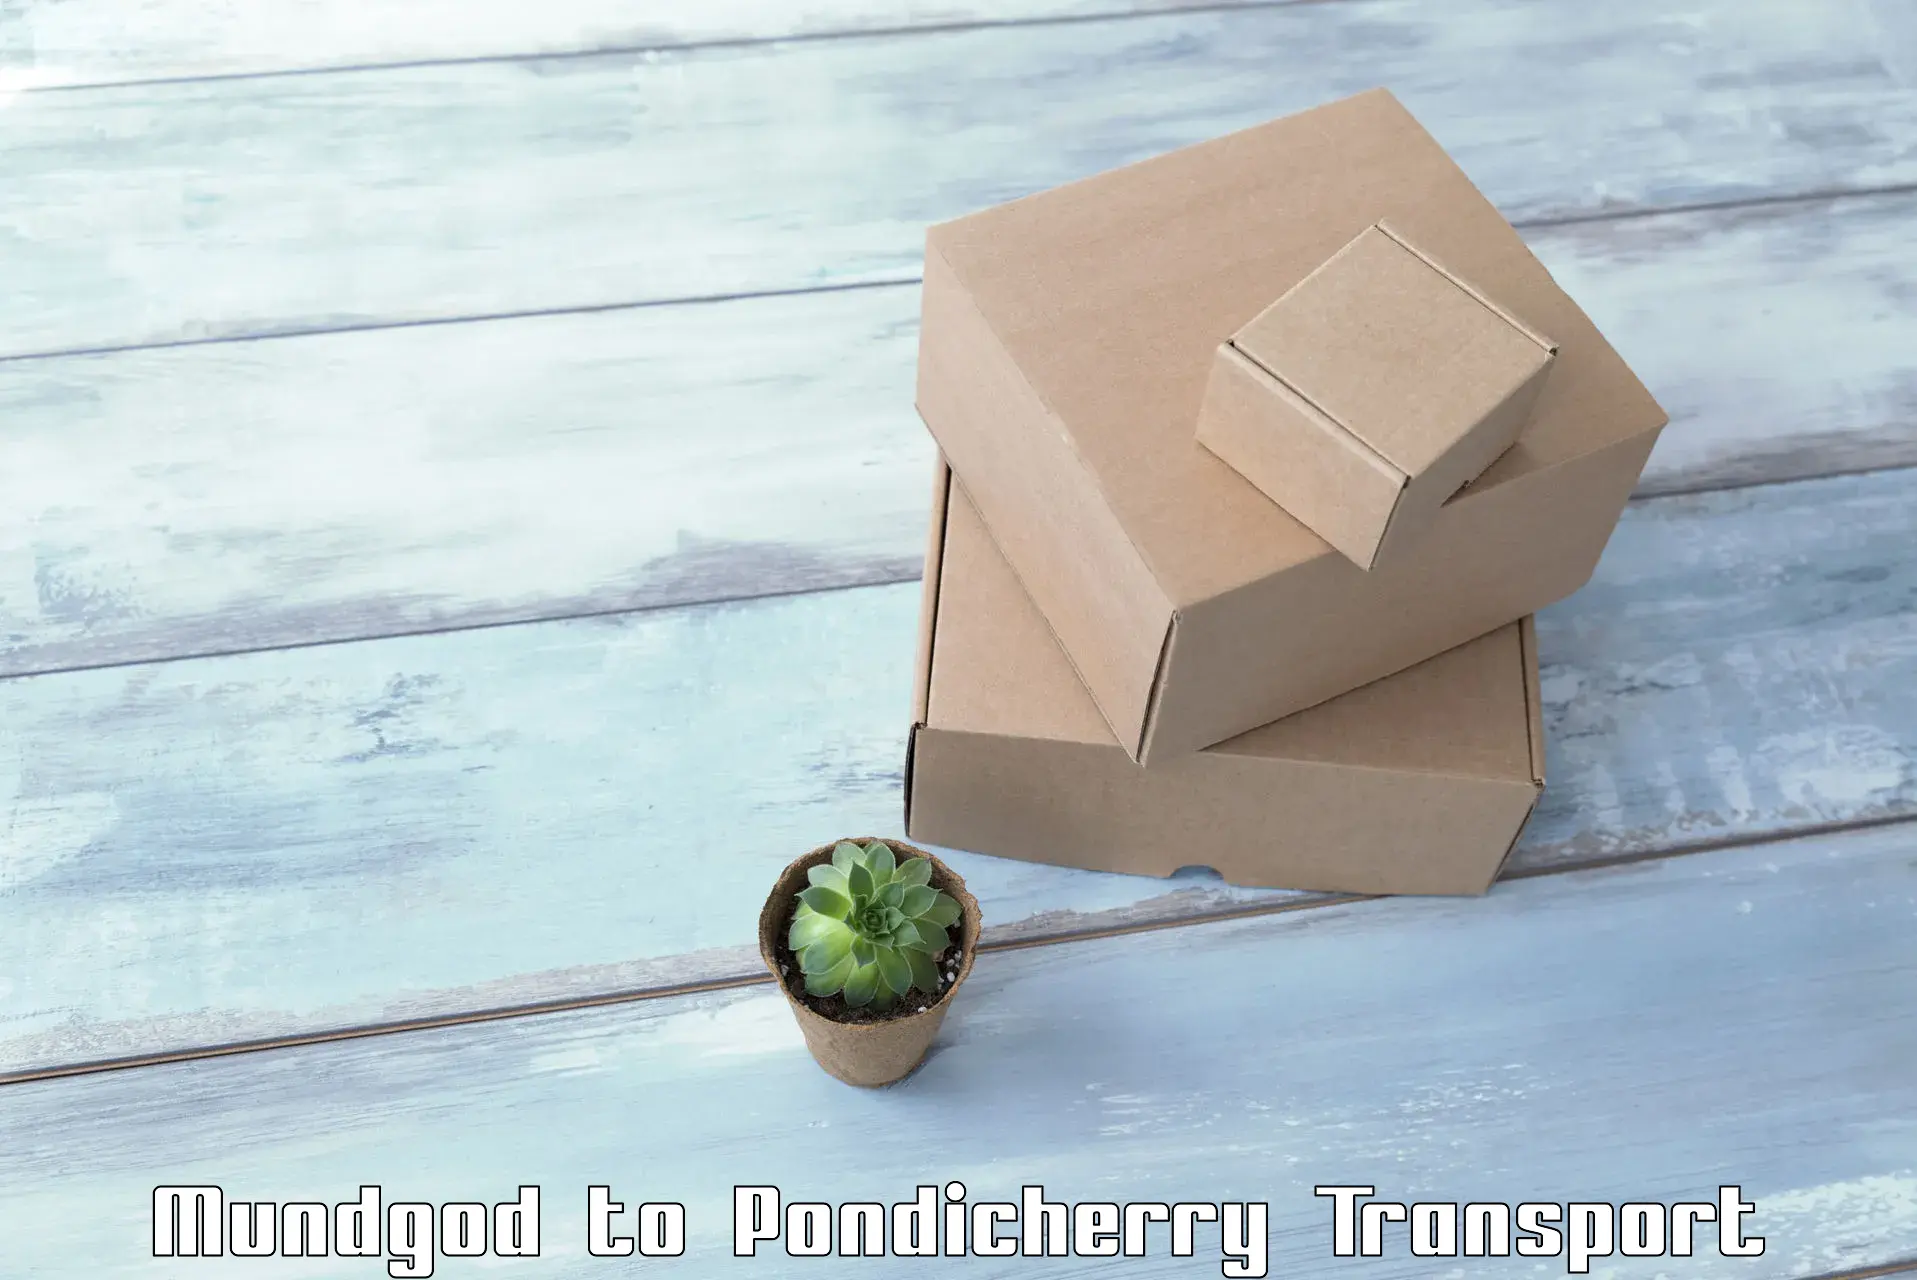 Cargo transportation services Mundgod to Pondicherry